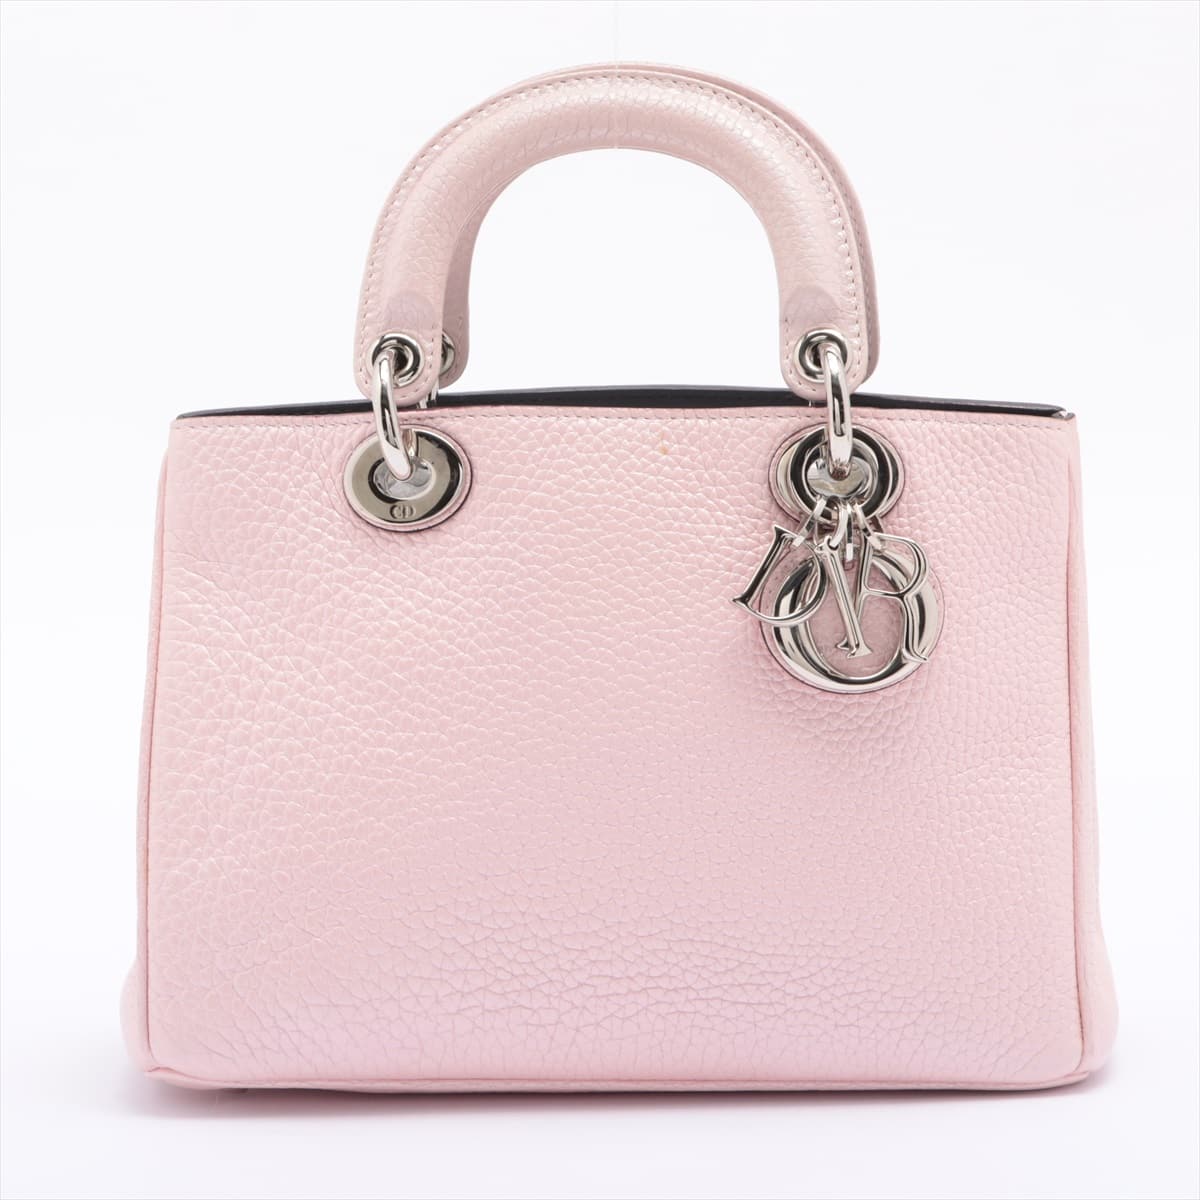 Christian Dior Diorissimo Leather 2way handbag Pink